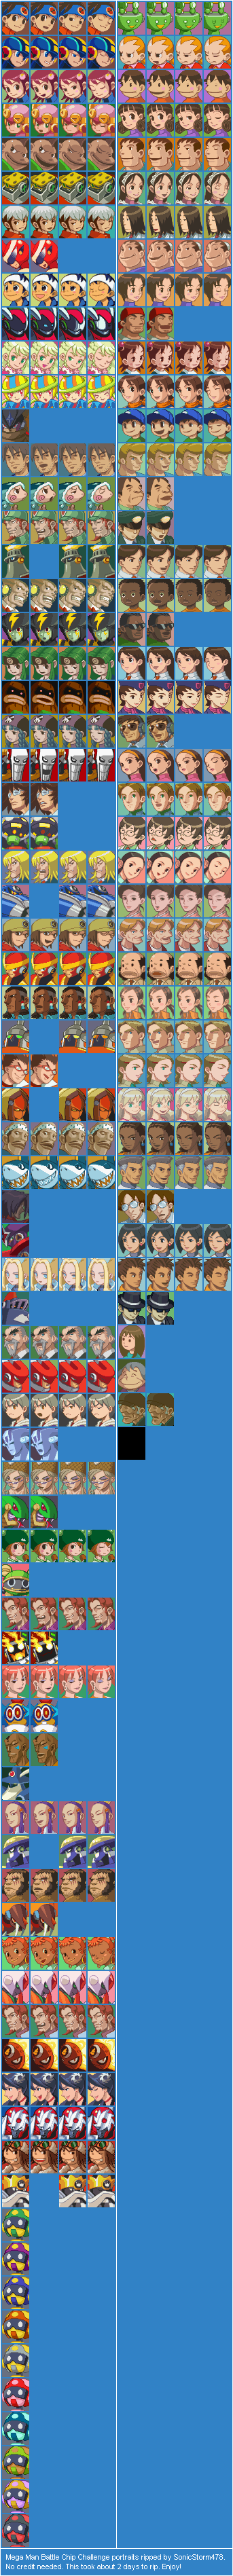 Mega Man Battle Chip Challenge - Portraits